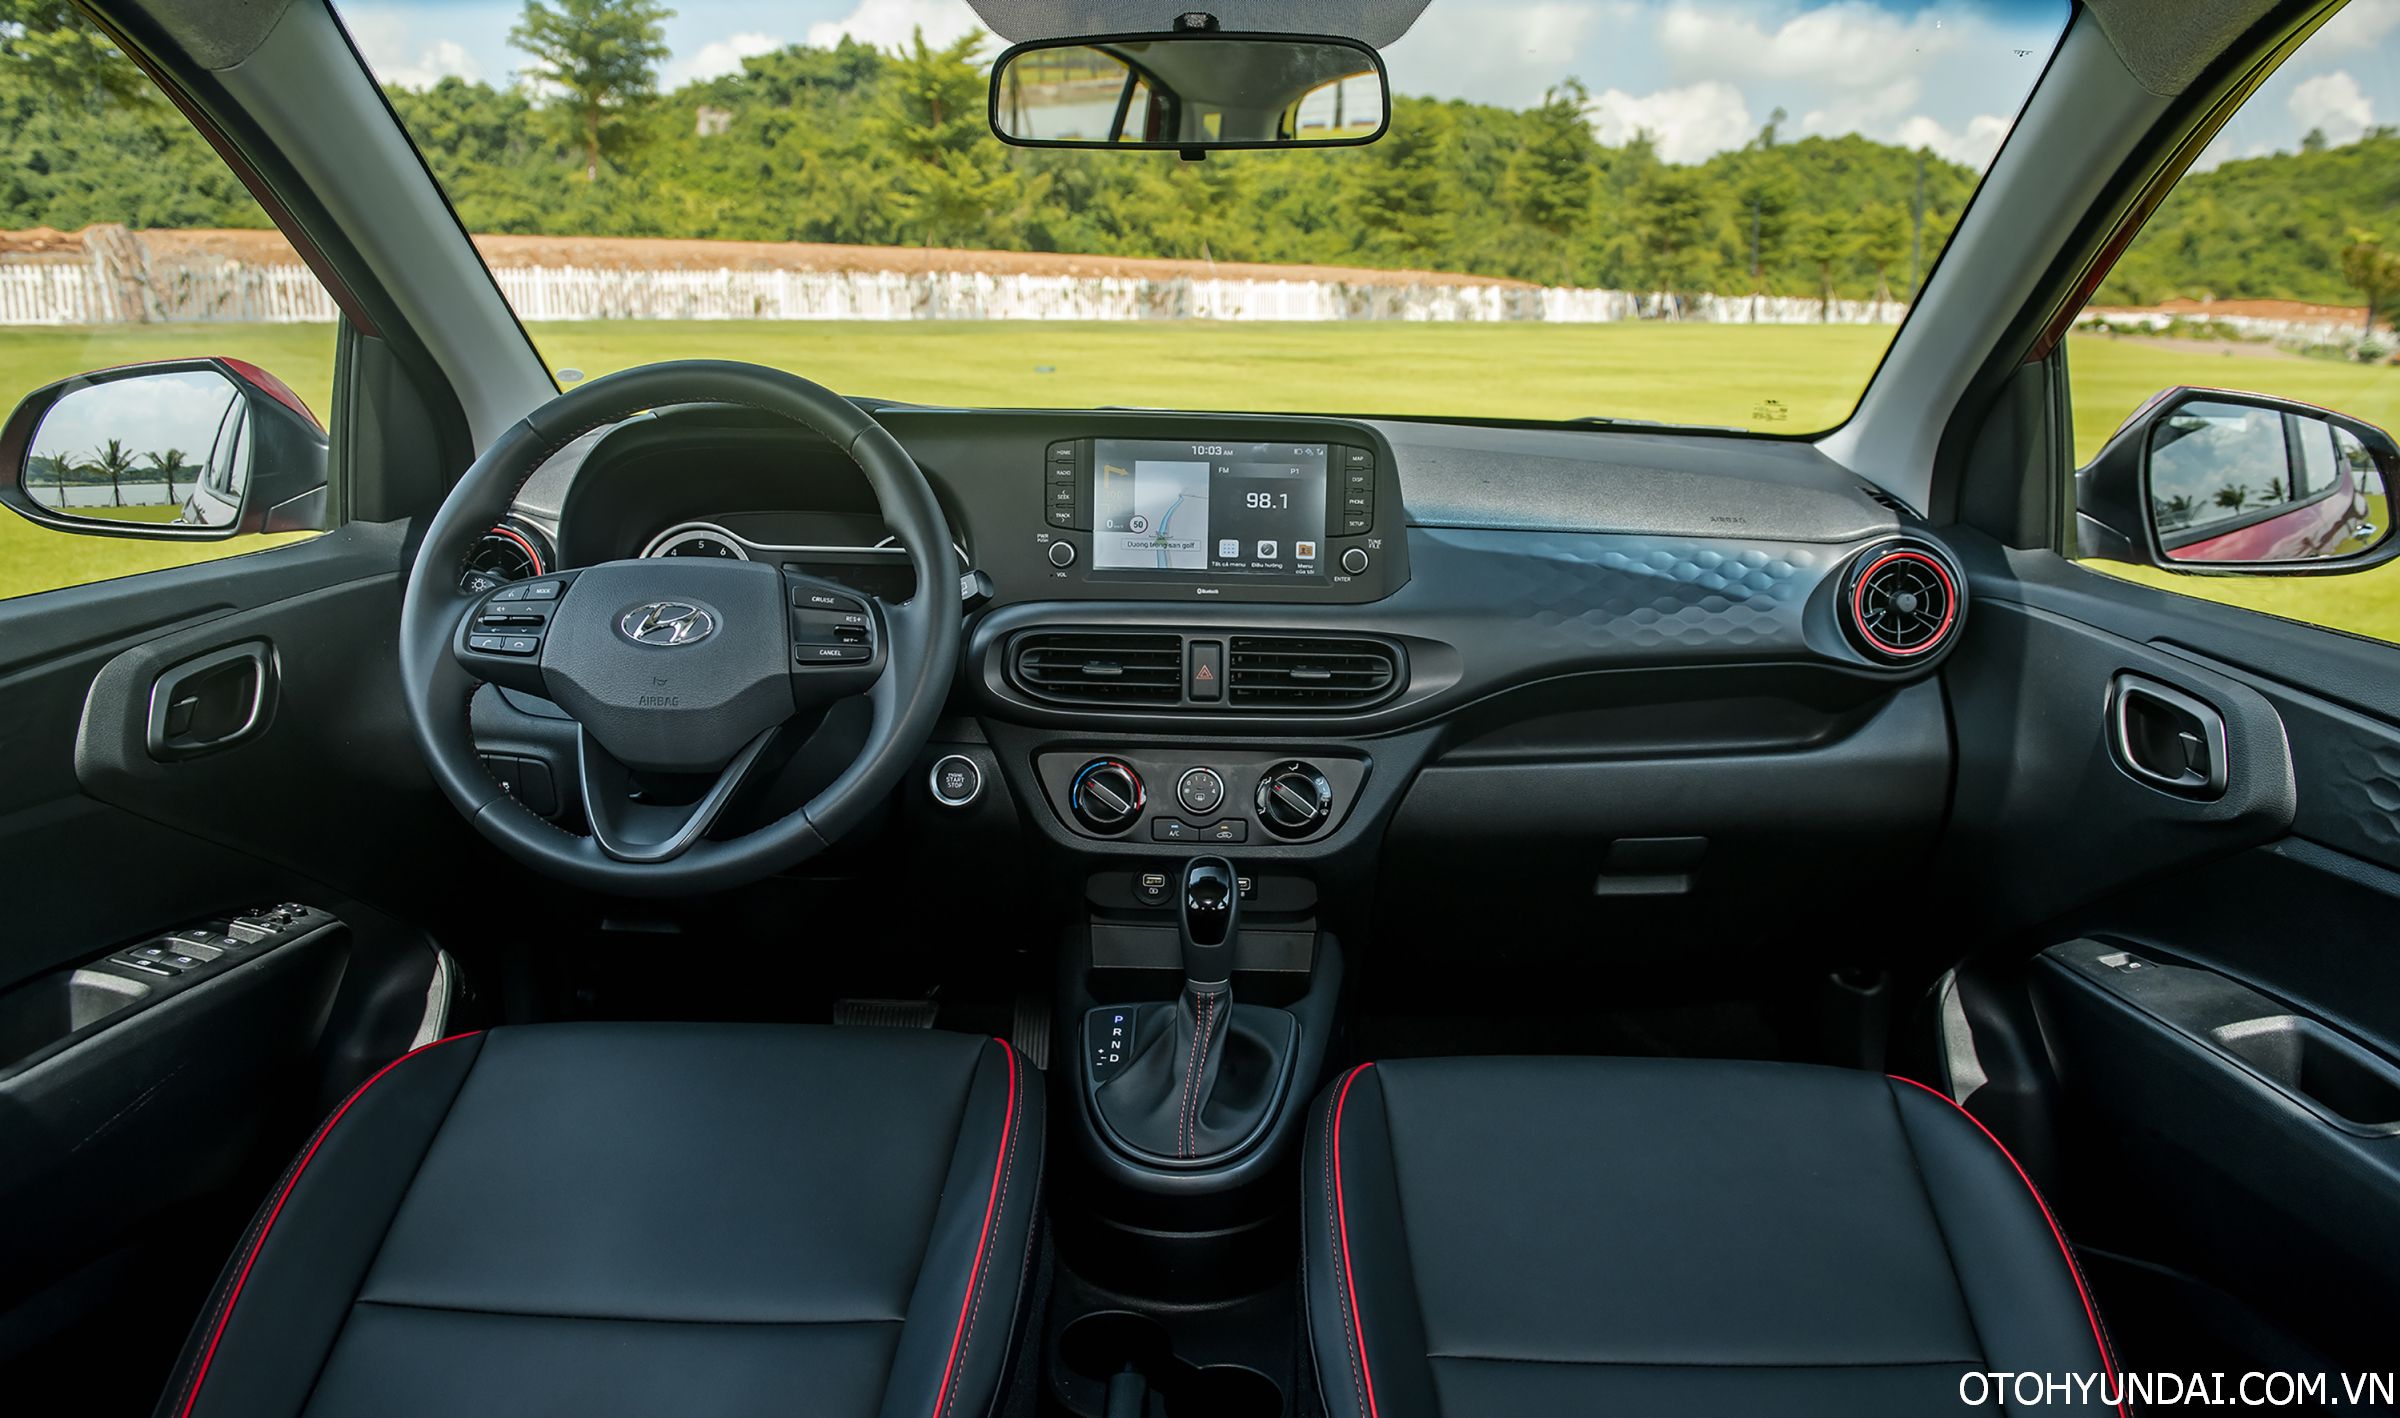 Hyundai Grand i10 Hatchback 1.2 AT Tiêu Chuẩn | Bảng táp-lô trung tâm giúp xe hiện đại hơn